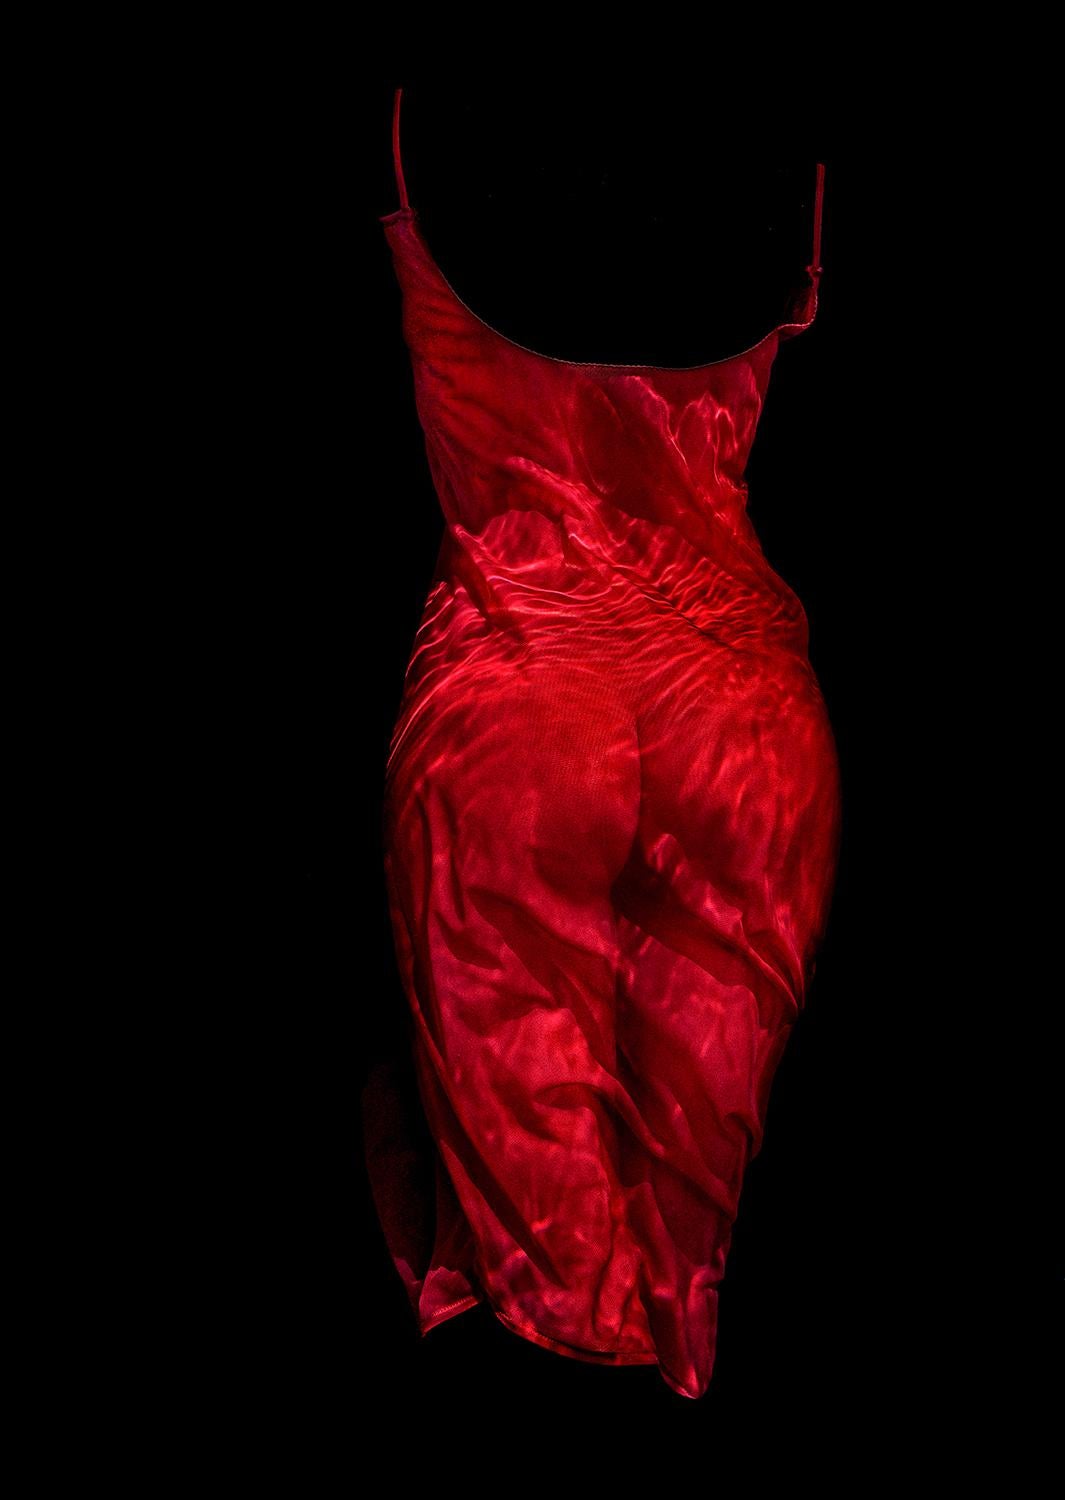 Merlot 2017 - Unterwasser-Nacktfotografie - Archivalischer Pigmentdruck 23,5